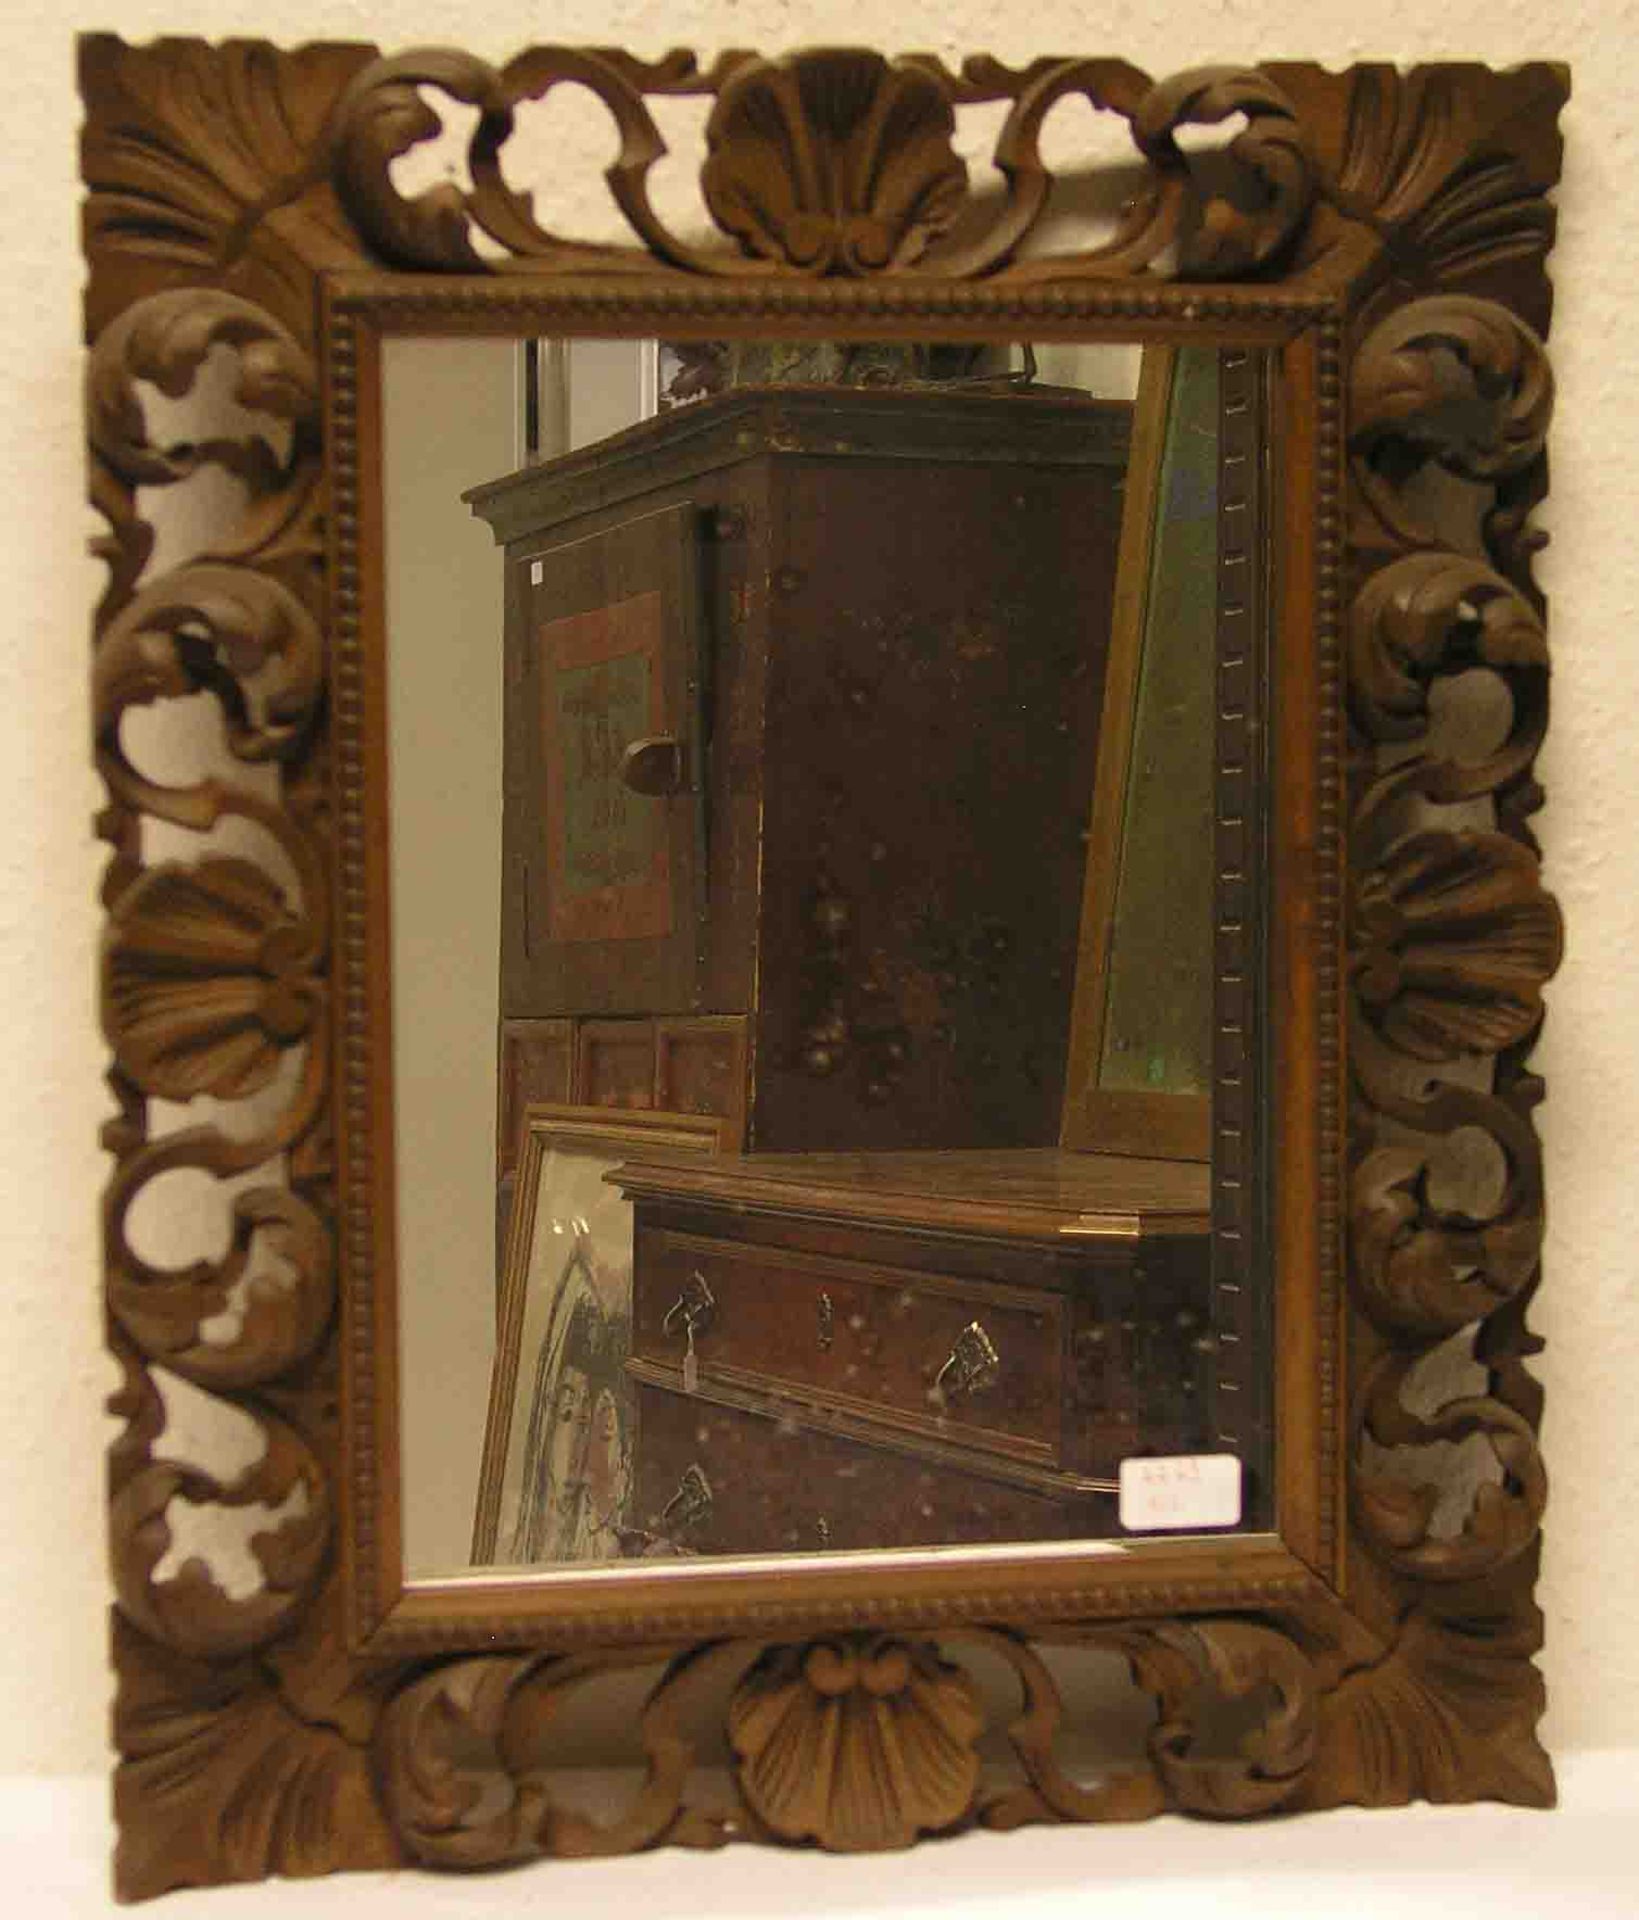 Spiegel im geschnitzten Holzrahmen. Gesamtmaße: 56 x 47cm.